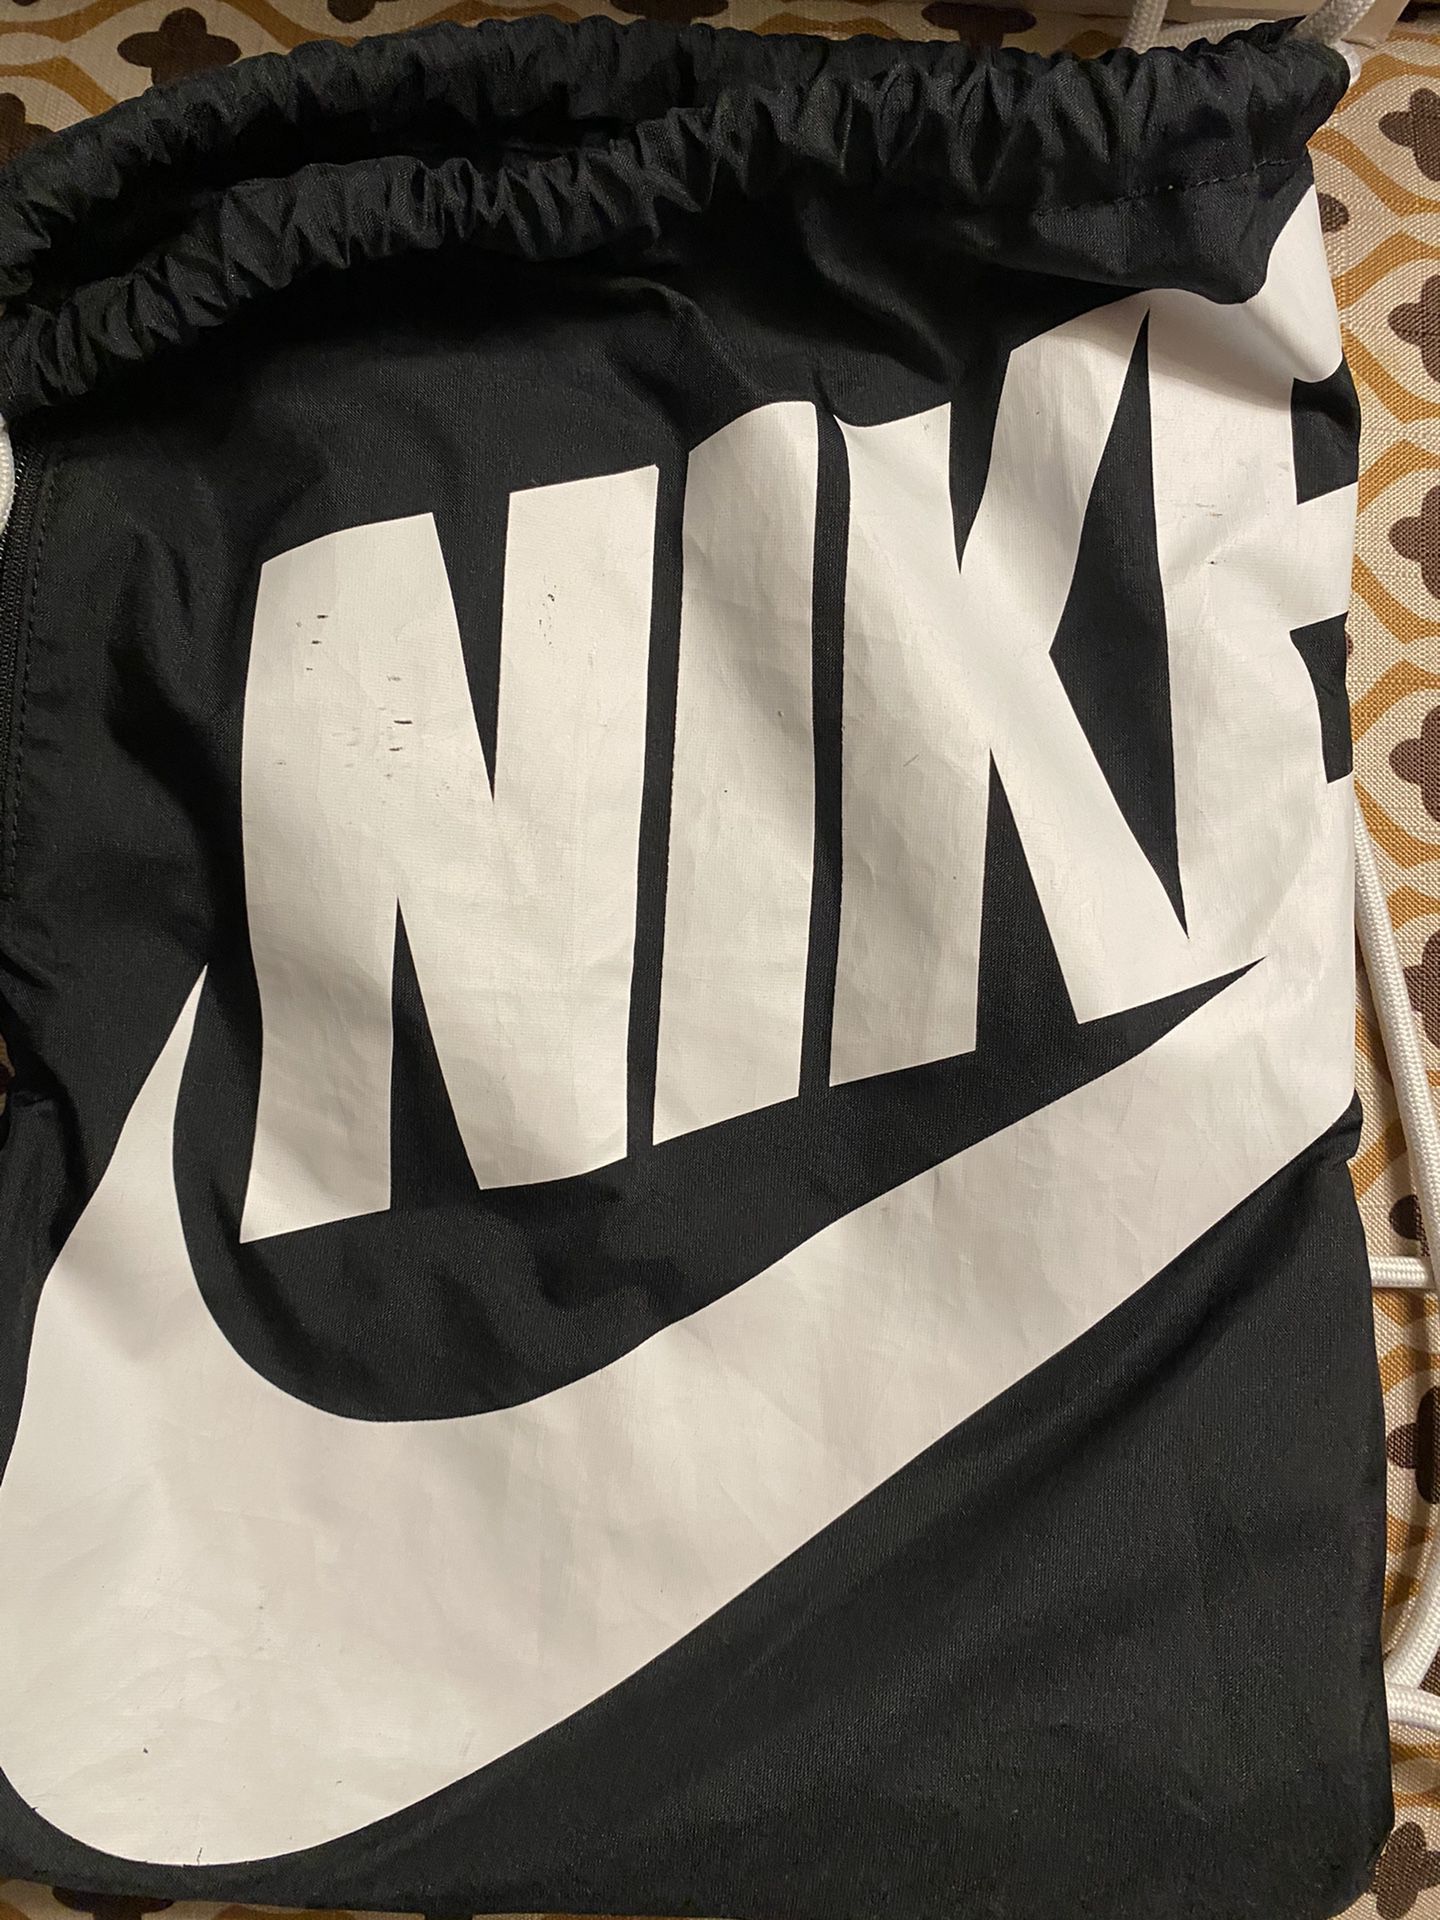 Nike gym bag like brand new